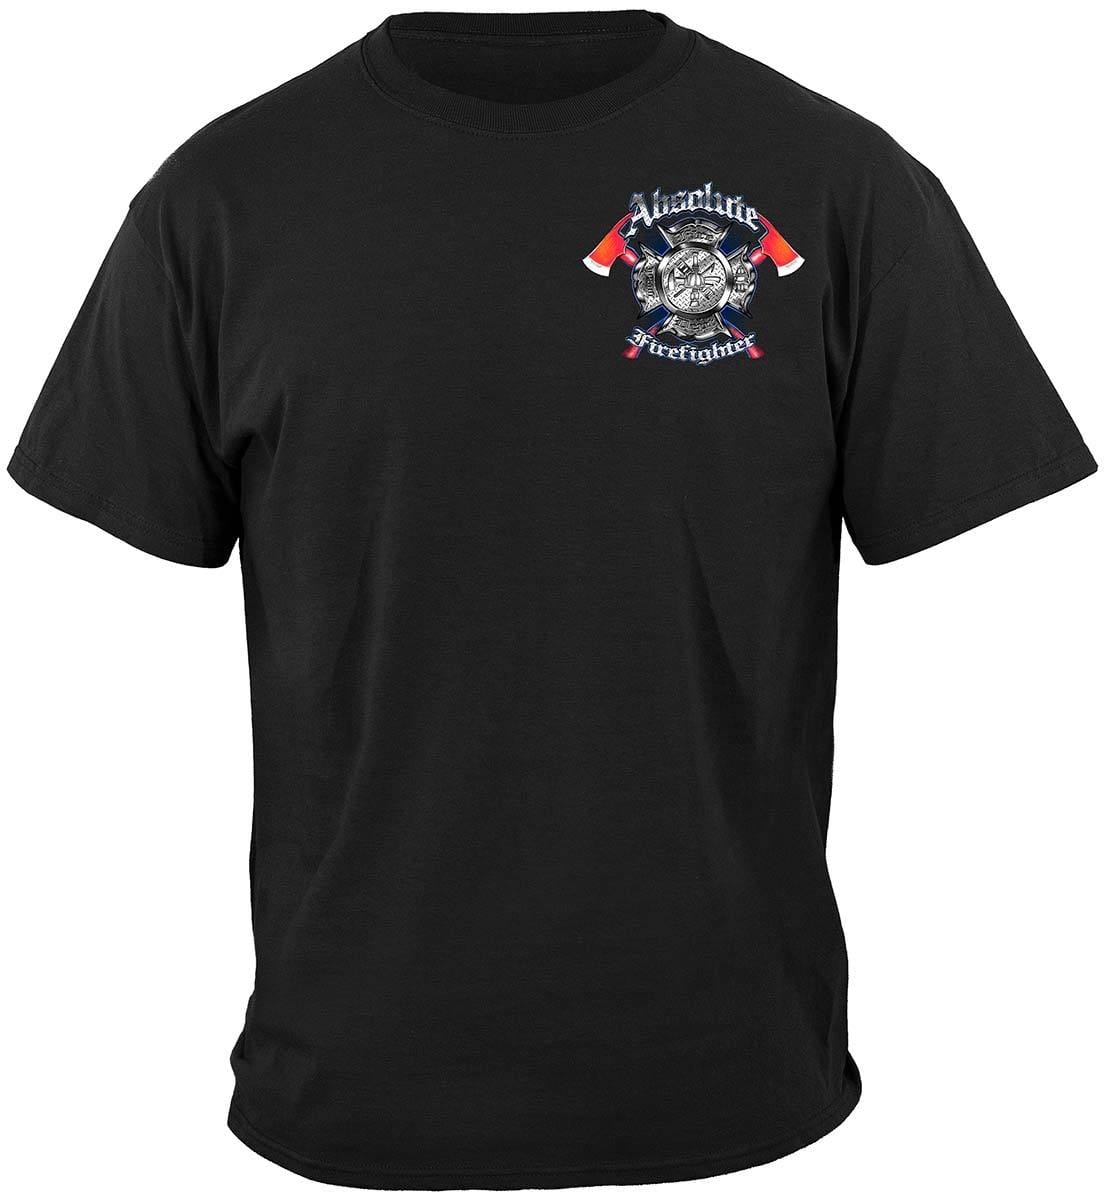 Absolute Firefighter Gas Mask Premium T-Shirt